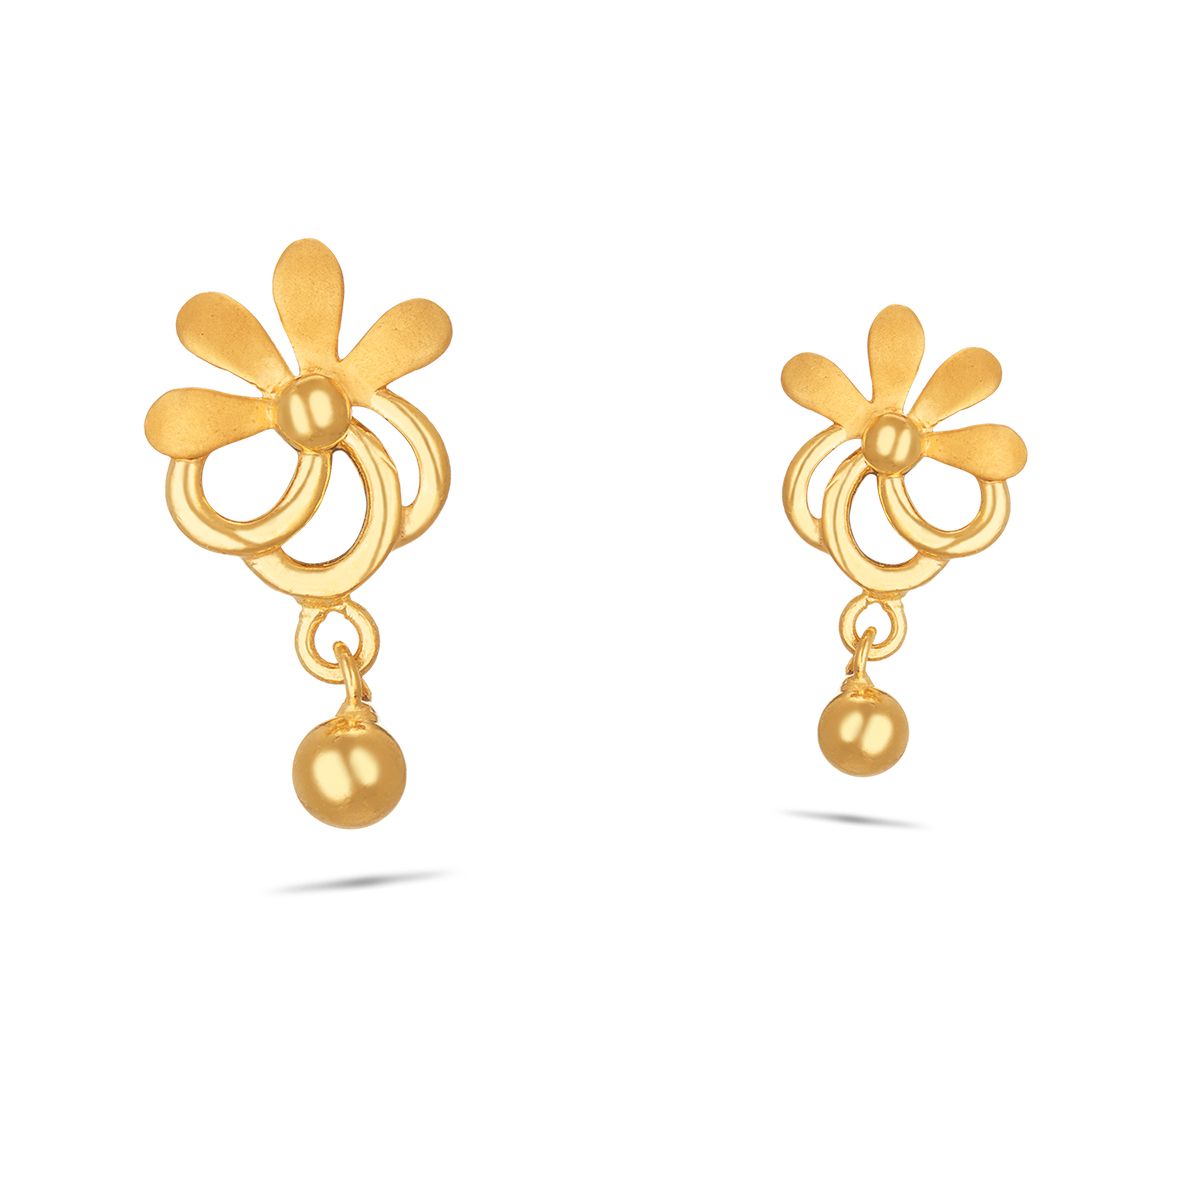 VELVETCASE SWIRL GOLD EARRINGS Yellow Gold Drop Earring Price in India -  Buy VELVETCASE SWIRL GOLD EARRINGS Yellow Gold Drop Earring online at  Flipkart.com